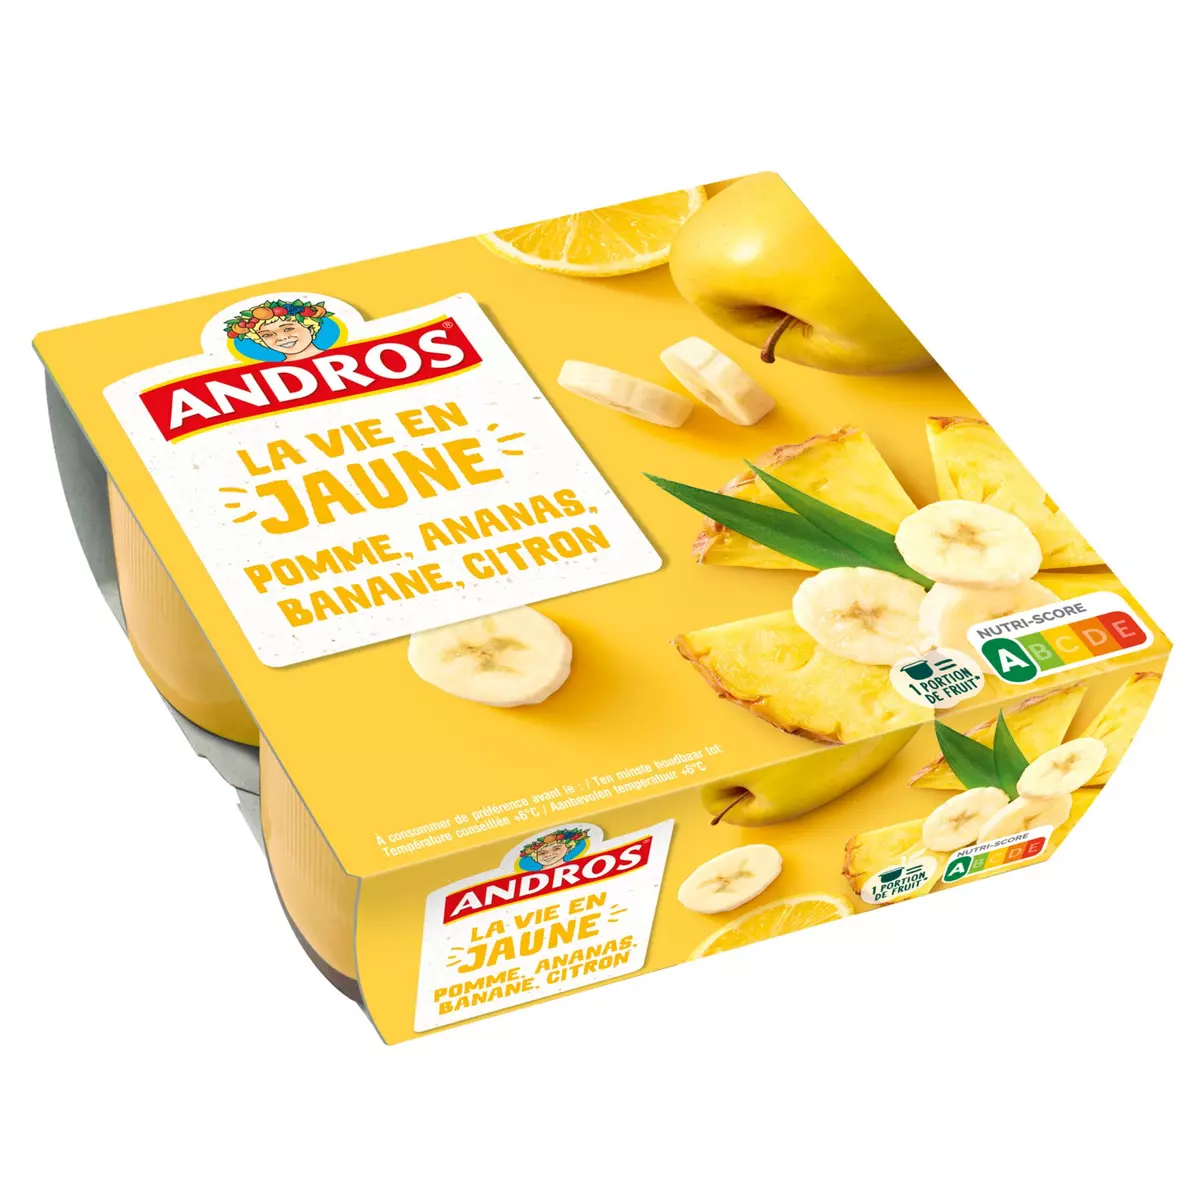 ANDROS La vie en jaune - Spécialité pomme ananas banane citron 4x100g